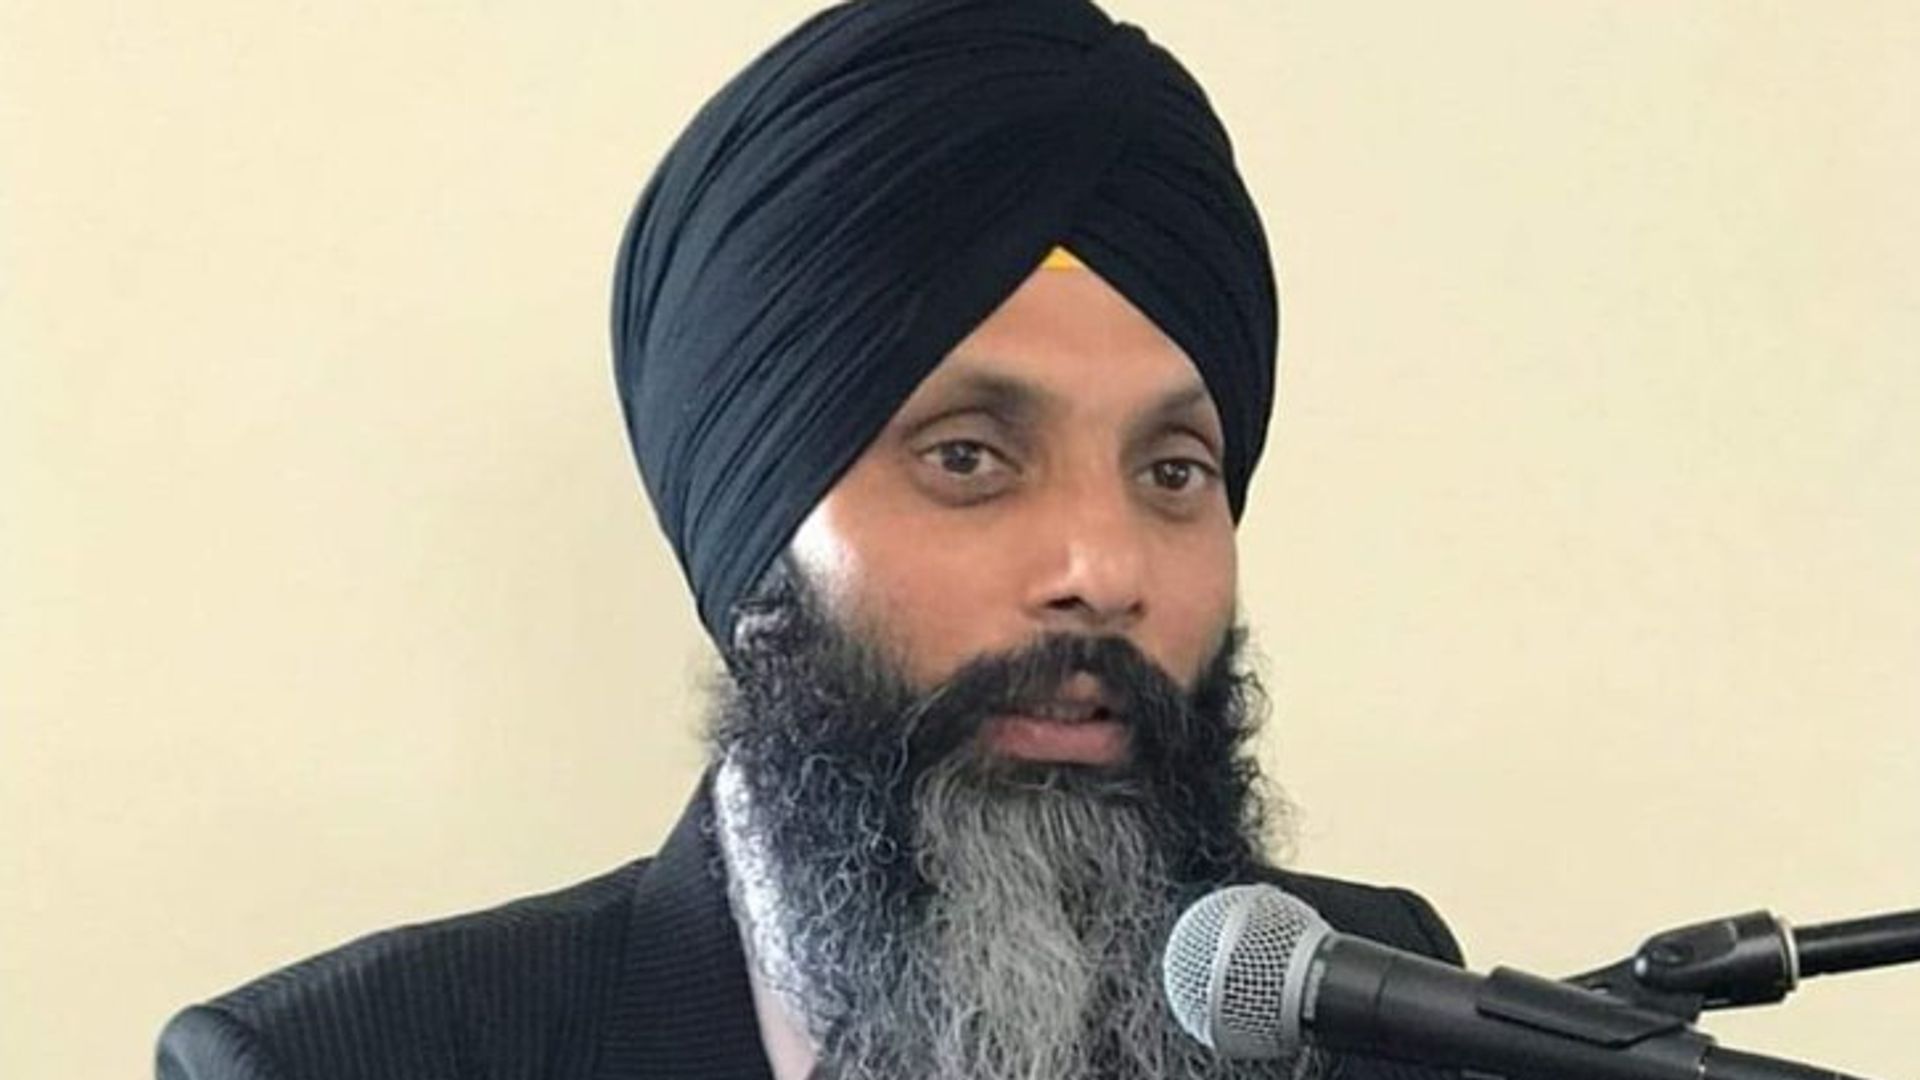 Tre incriminati per l’uccisione di un leader separatista sikh in Canada, in un incidente che ha scatenato un conflitto diplomatico